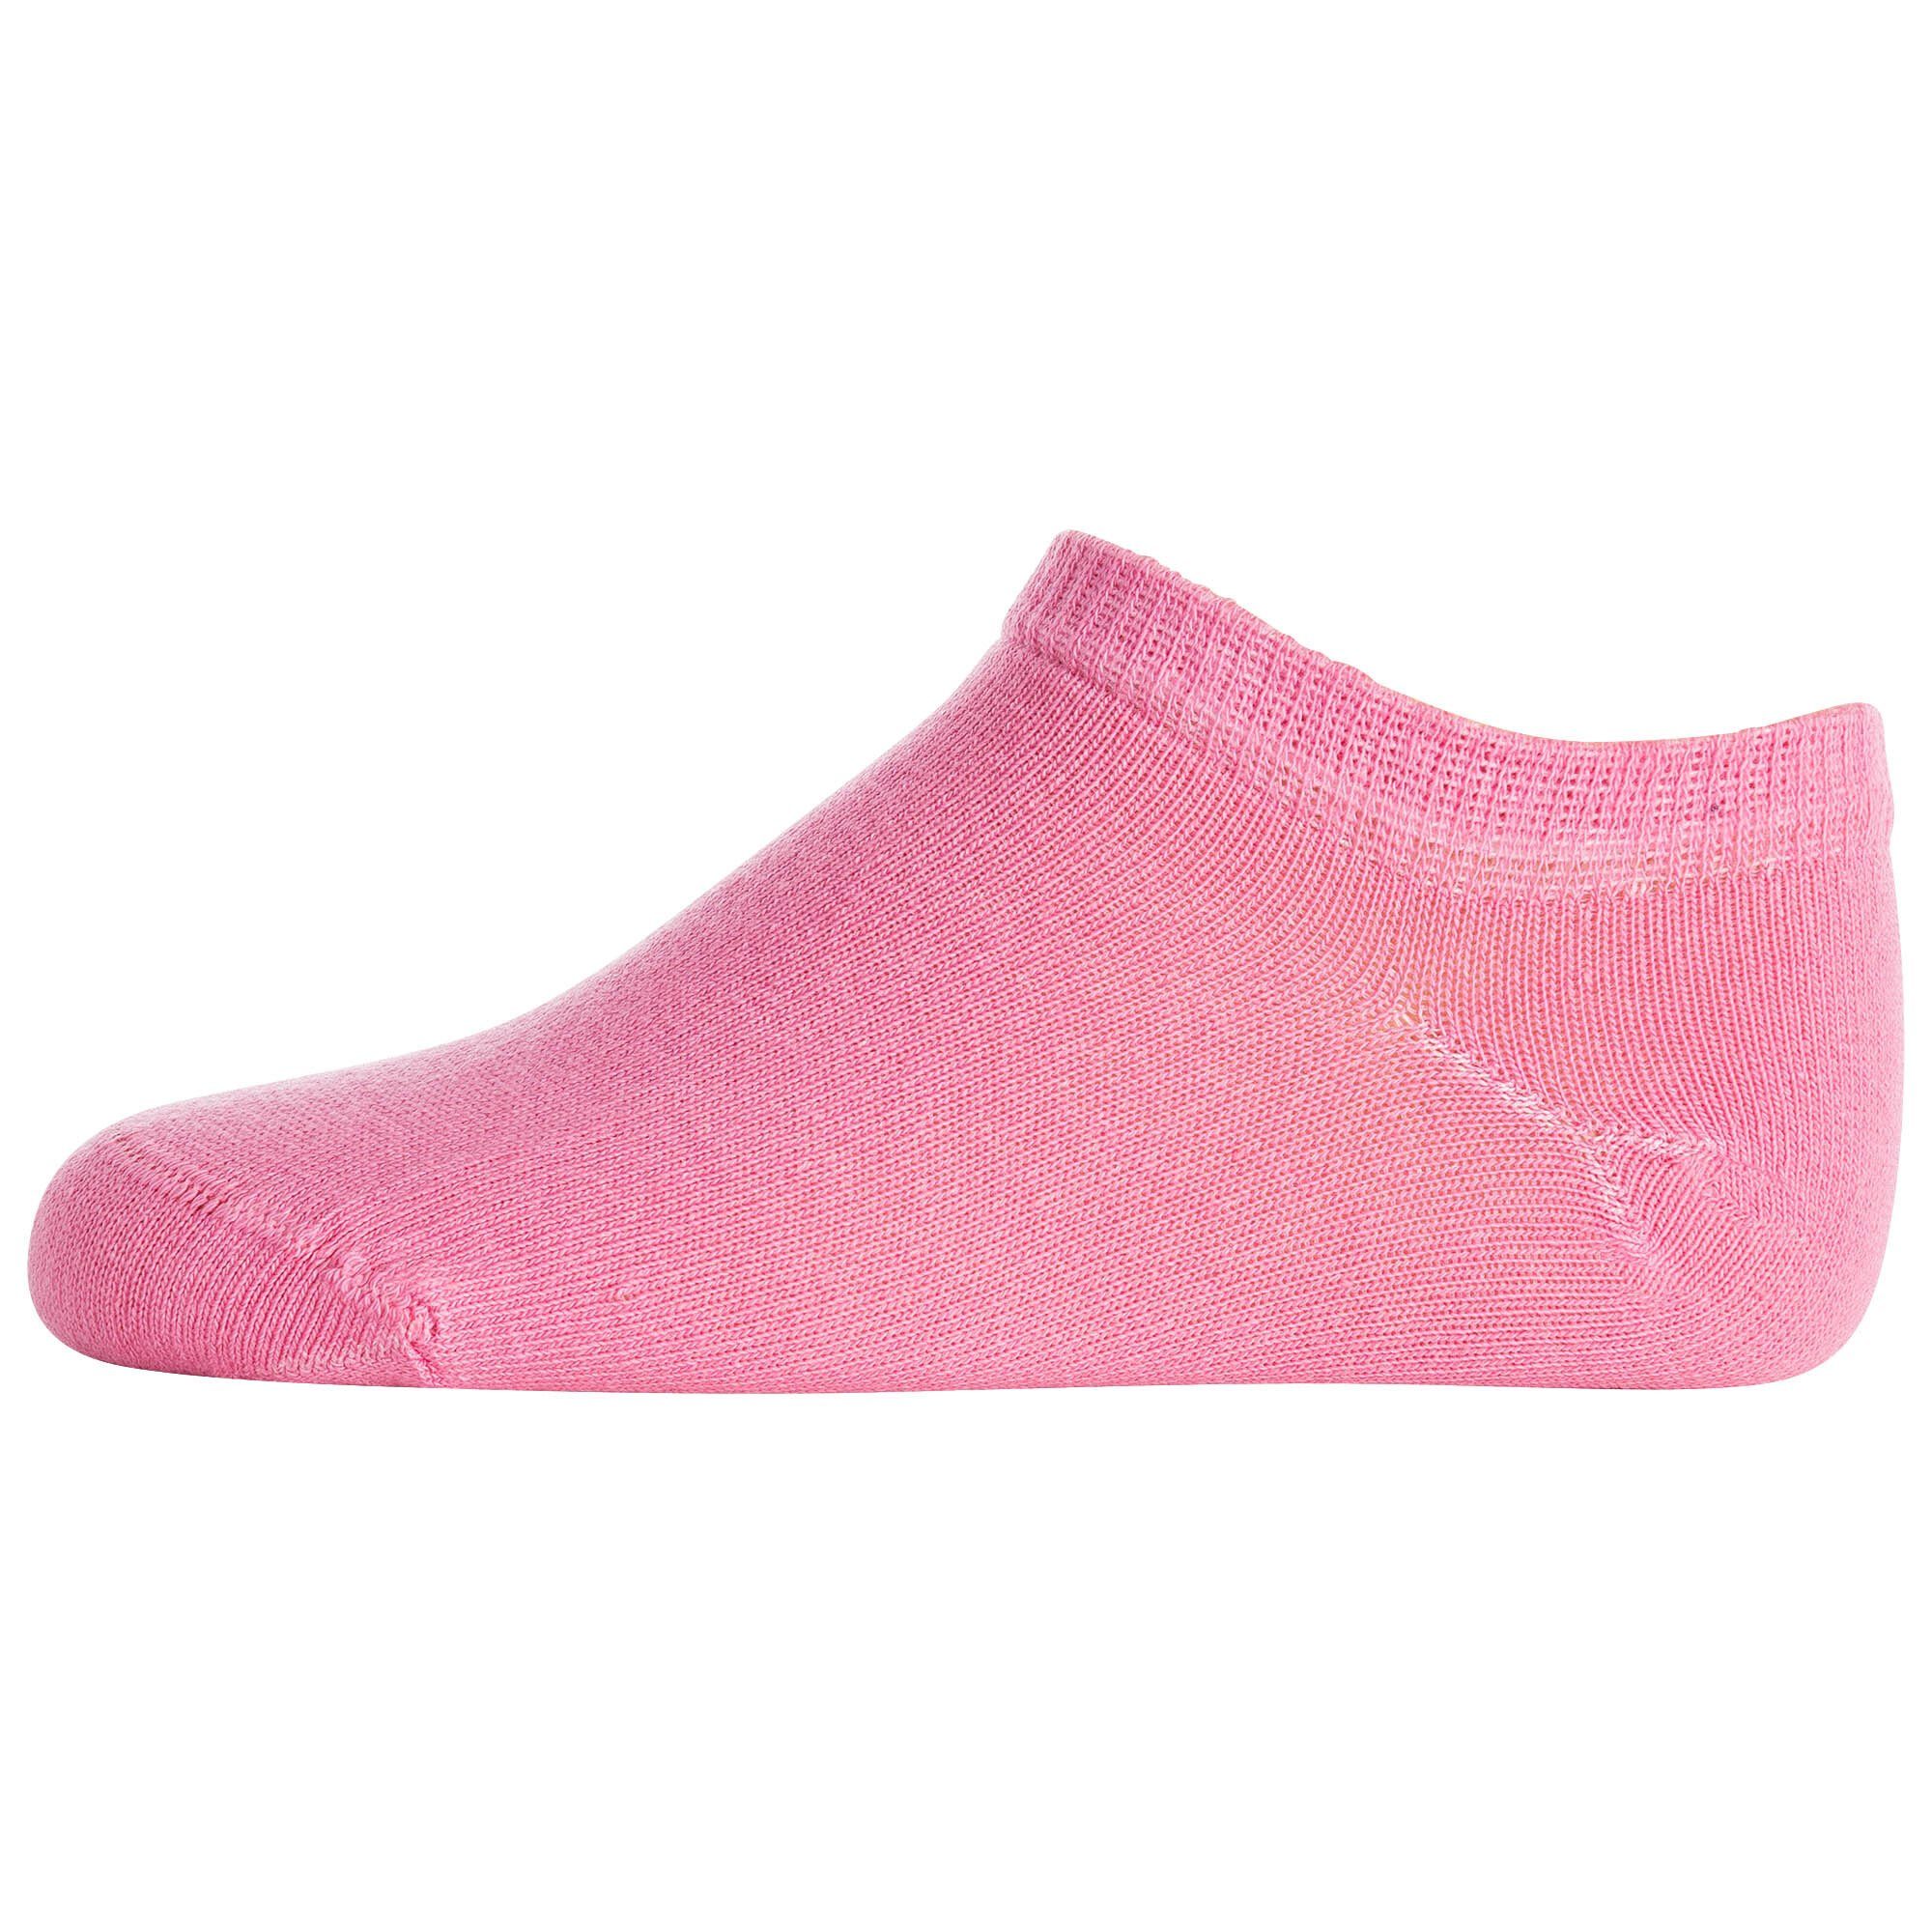 Pack- Weiß/Pink/Lila/Schwarz Socken, Kinder Freizeitsocken Logo Champion Sneaker, 5er